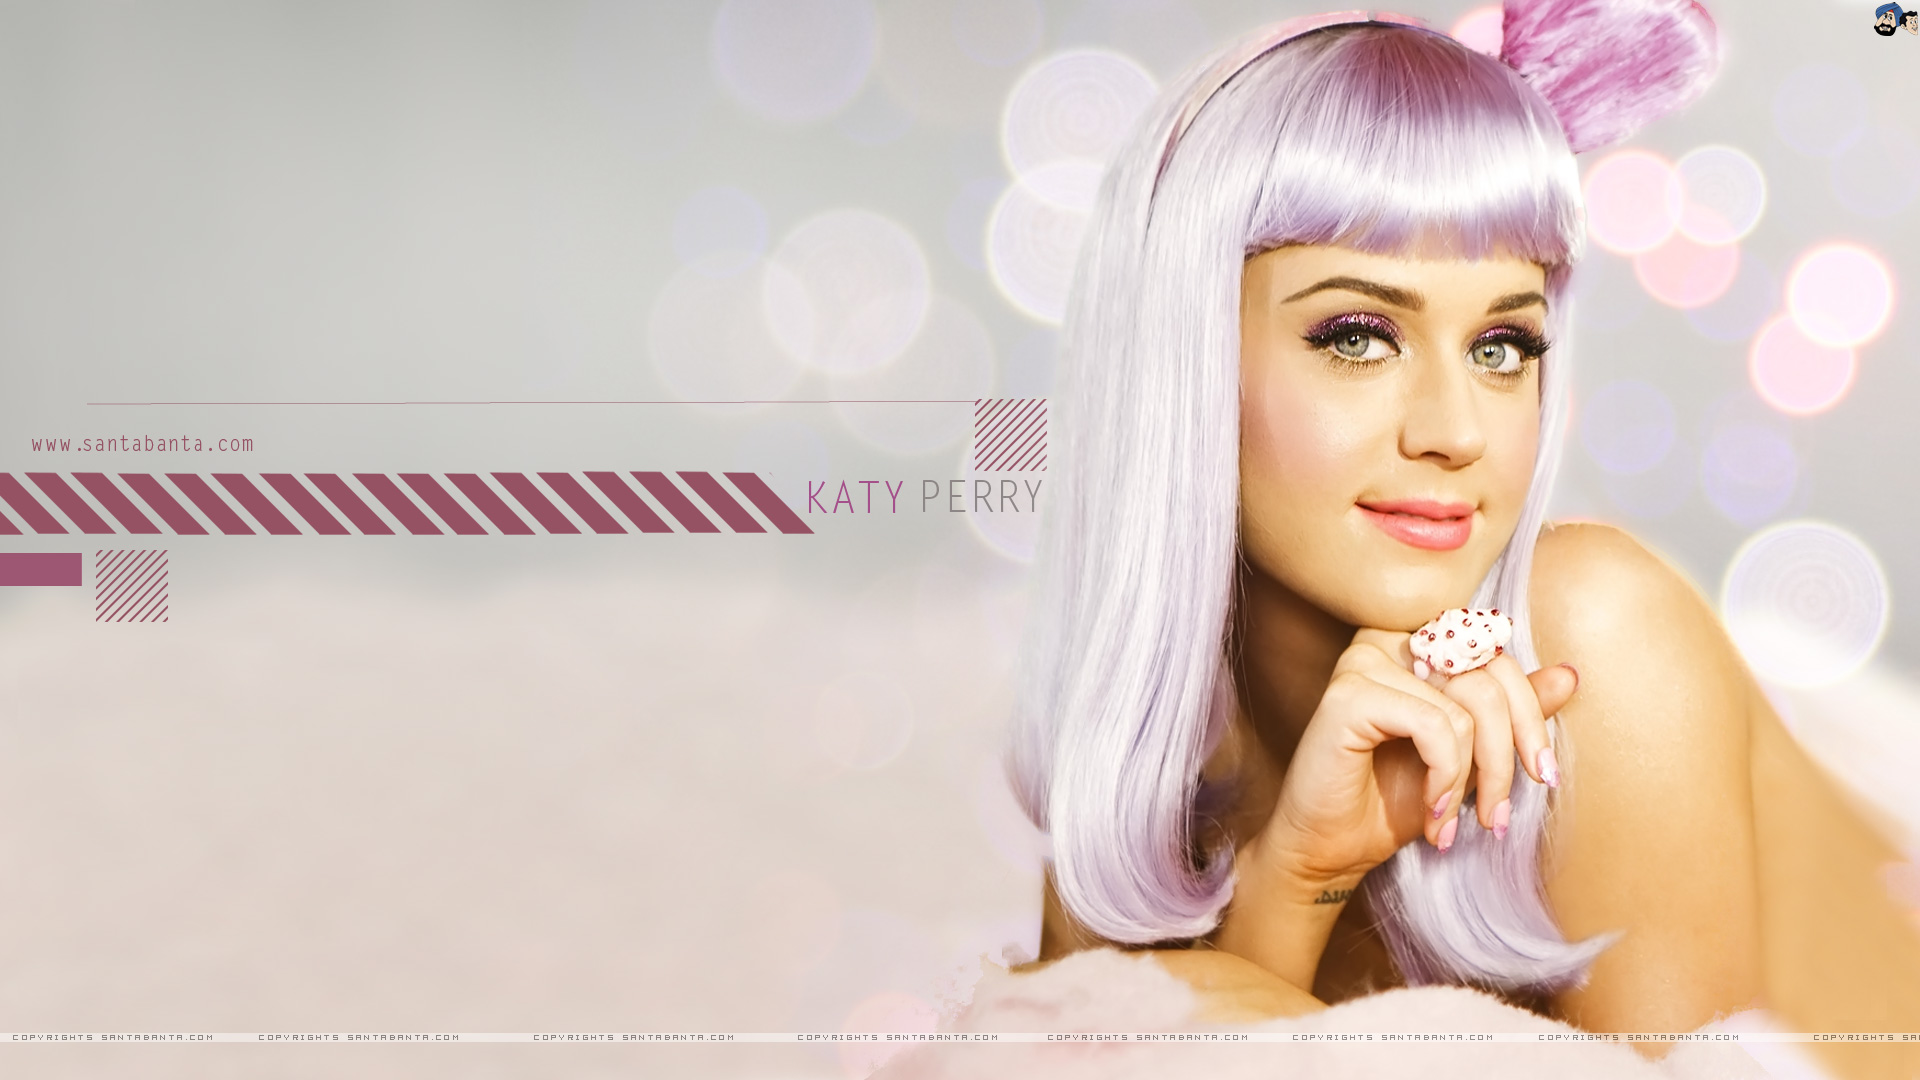 Katy Perry Celebrities Wallpaper Hot Global Full5 Imagen